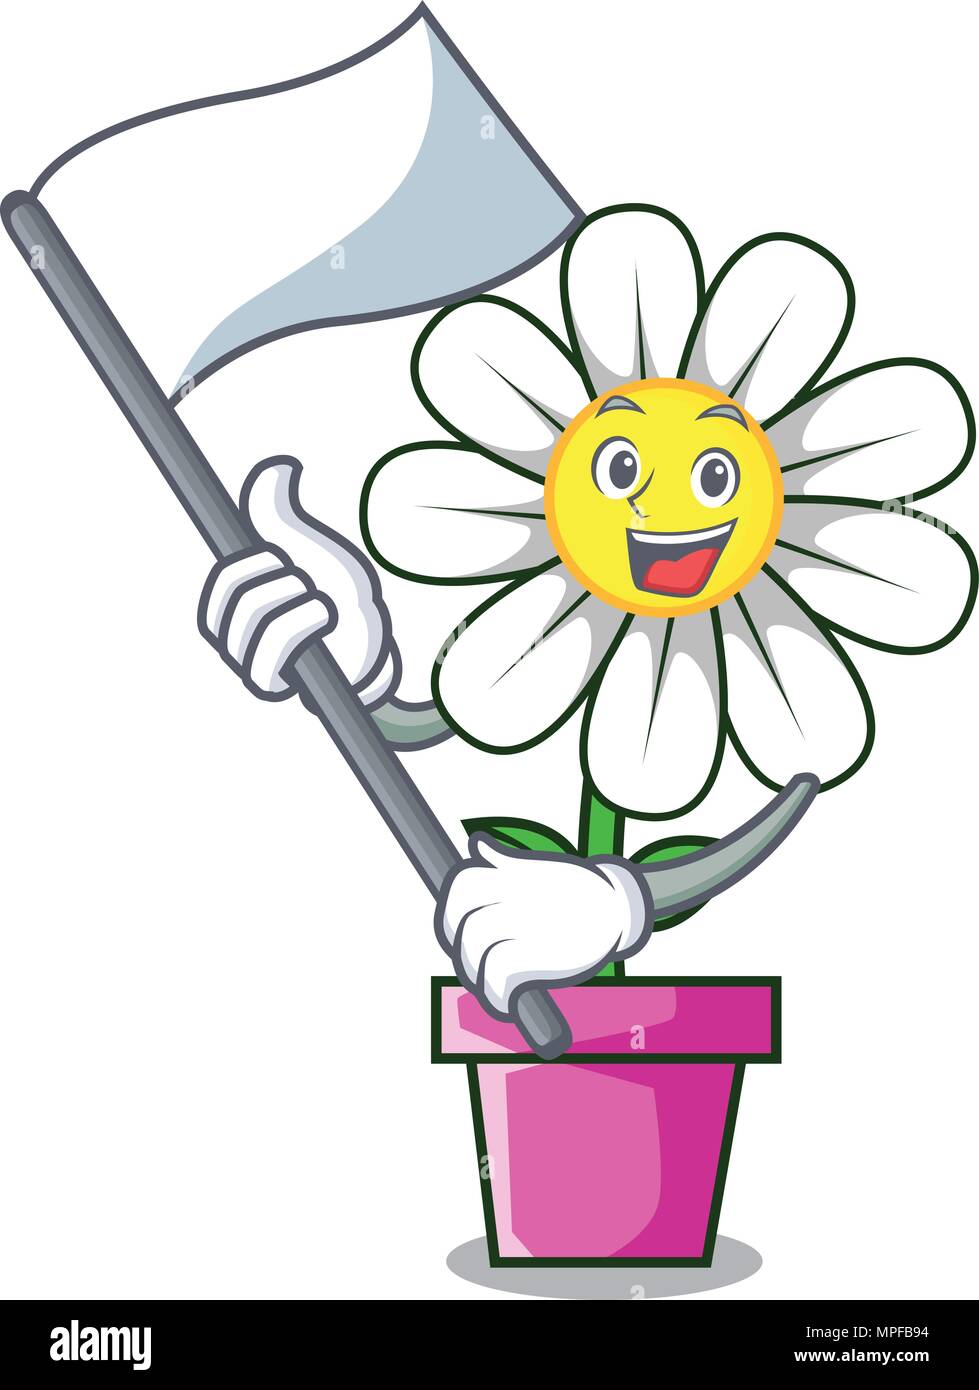 With flag daisy flower mascot cartoon Stock Vector